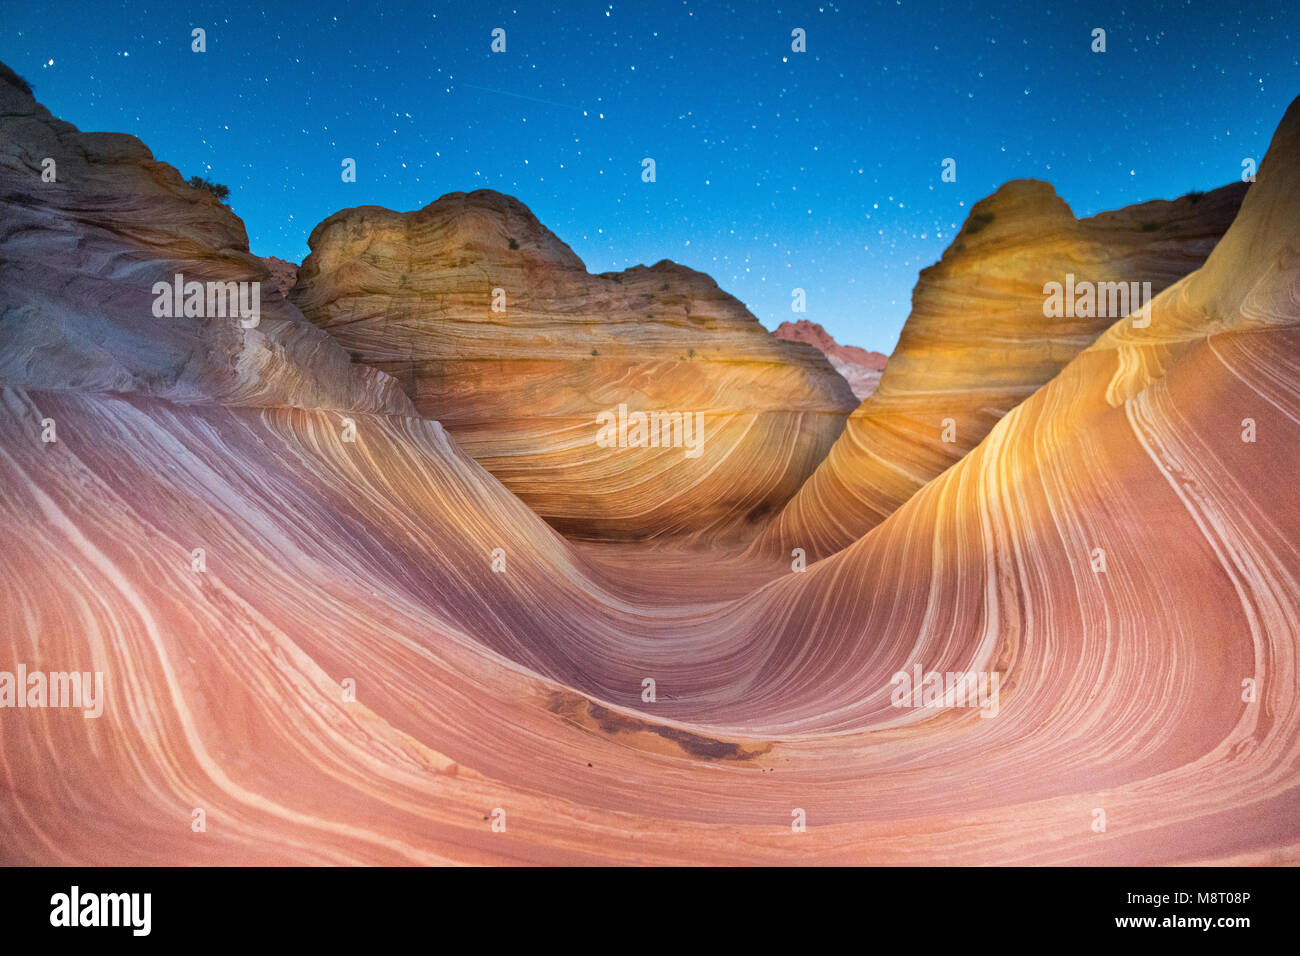 Una estrella fugaz pasa sobre la onda formación de roca arenisca, ubicado en Coyote Buttes North, Paria Canyon, Vermillion Cliffs Wilderness. Foto de stock